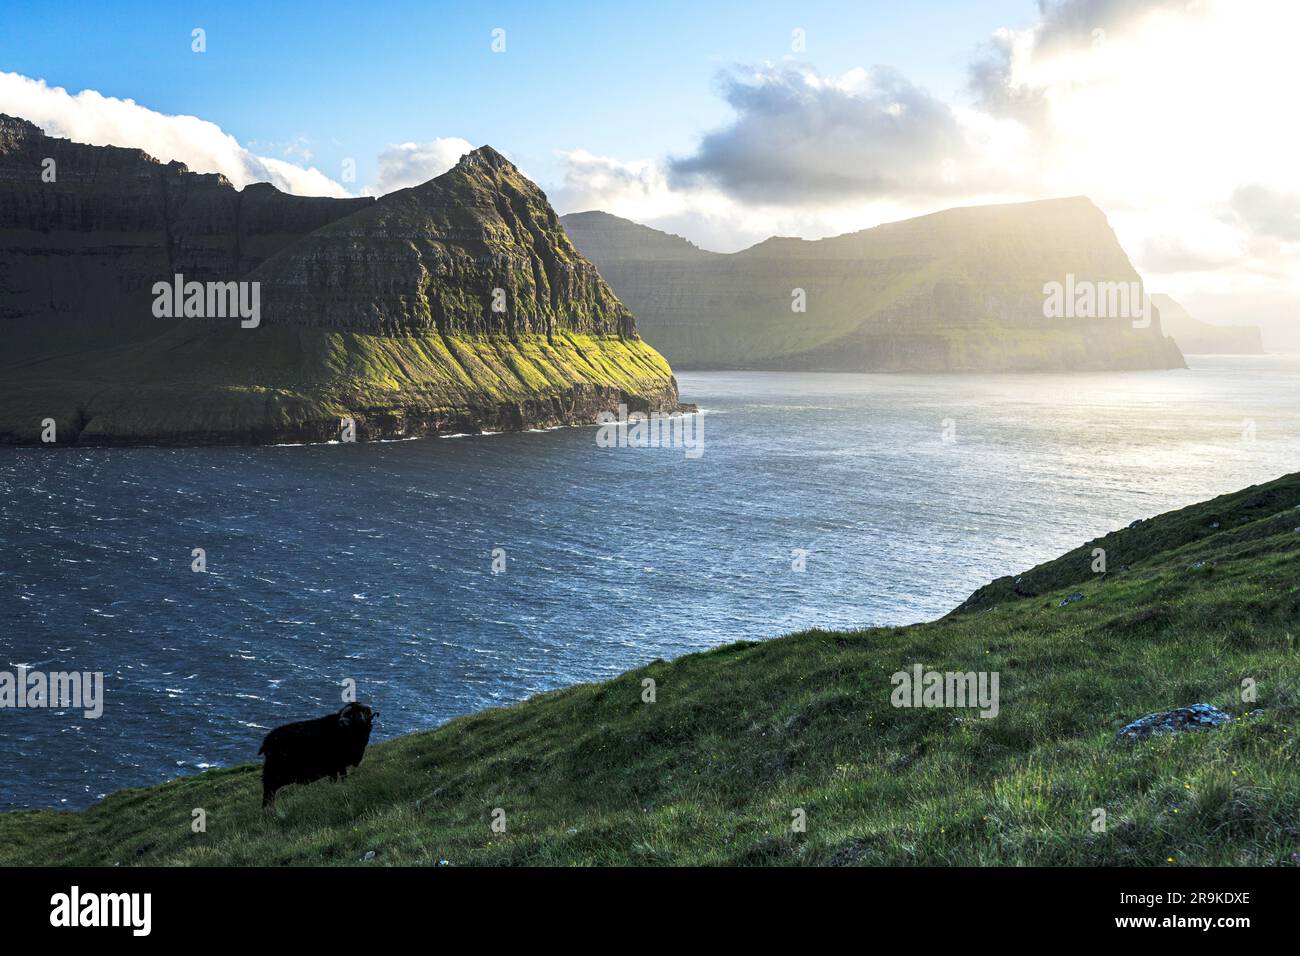 Pecore solitarie nei prati verdi che si affacciano sull'oceano, sull'isola di Vidoy e sulle isole Faroe Foto Stock